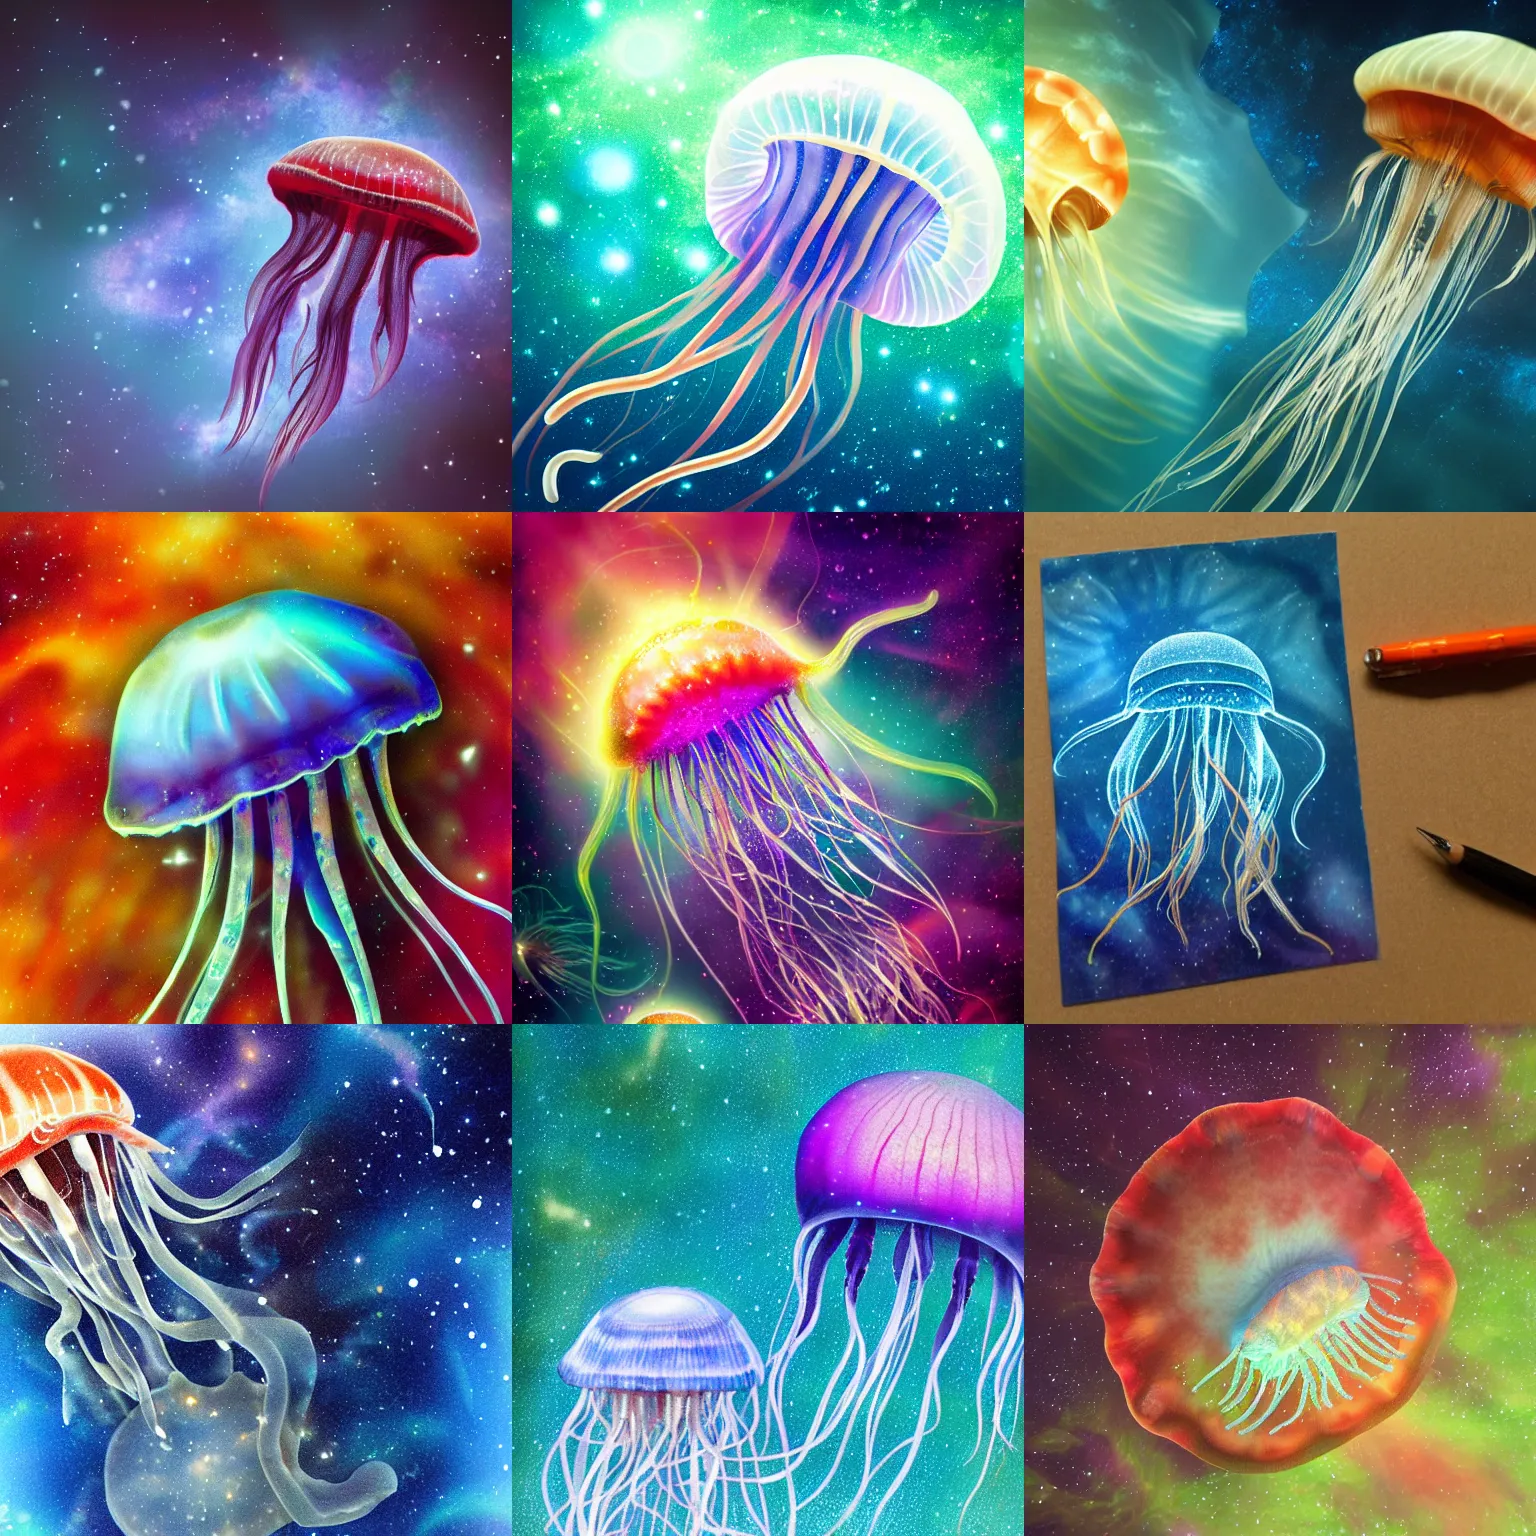 Prompt: Photorealistic jellyfish and a nebula